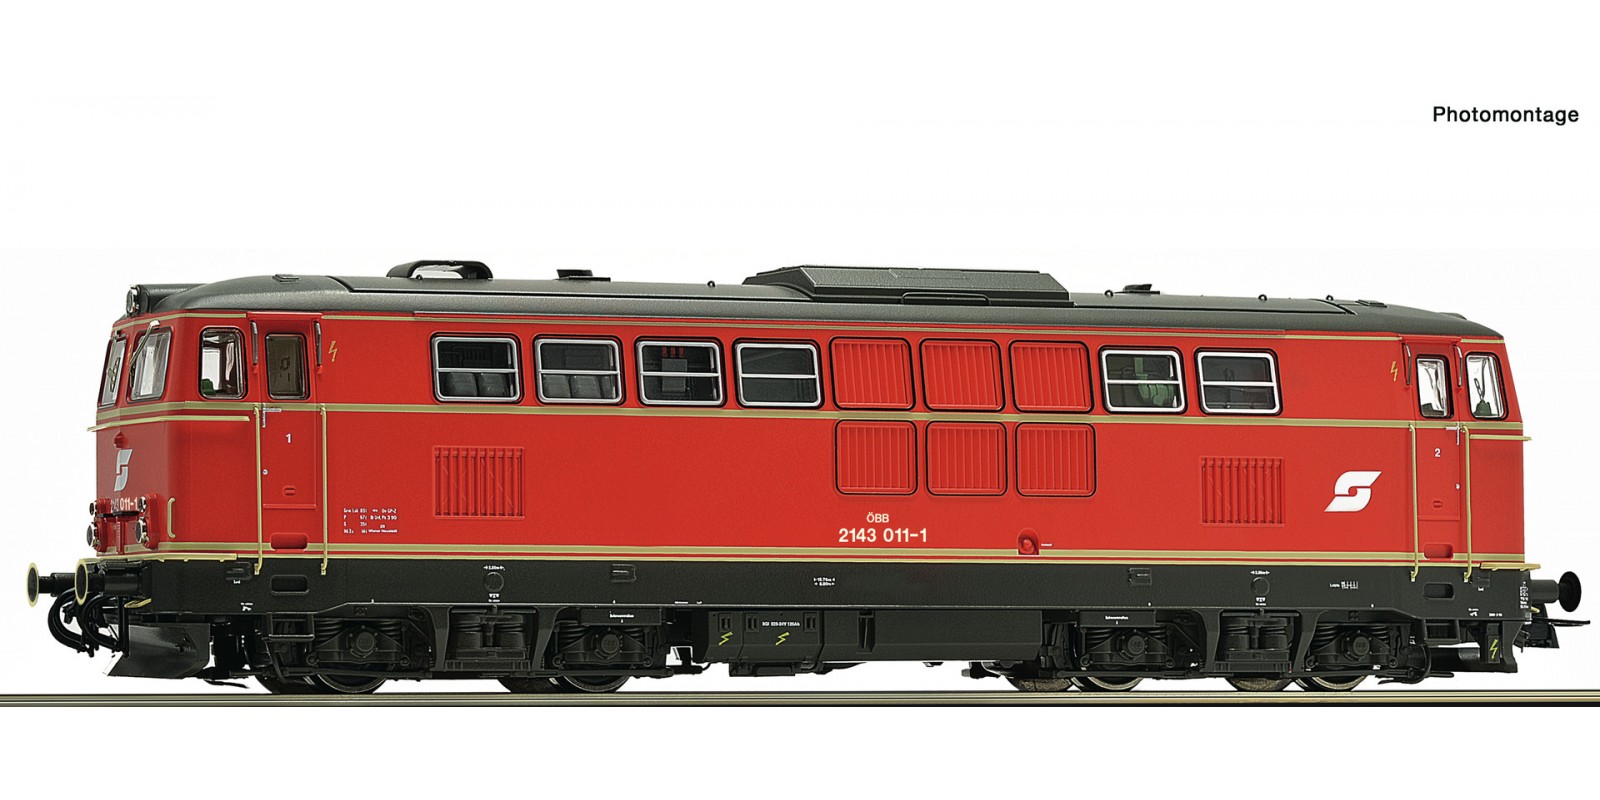 RO70713 Diesel locomotive 2143 011-1